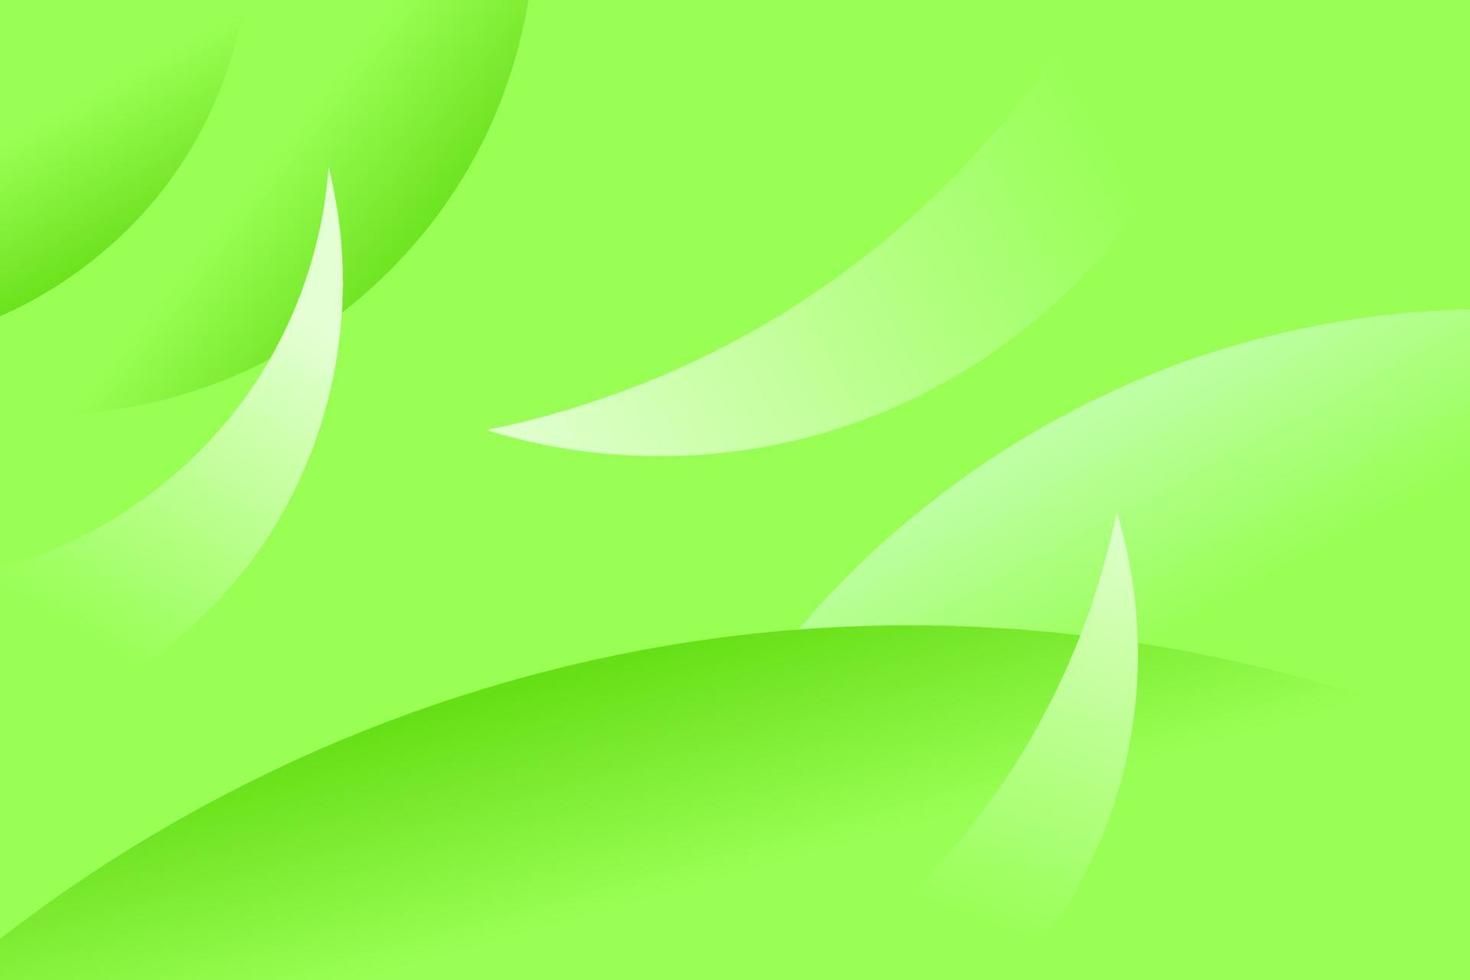 fond vert serein avec une couleur feuillue, avec un motif incurvé effilé. graphiques vectoriels abstraits vecteur